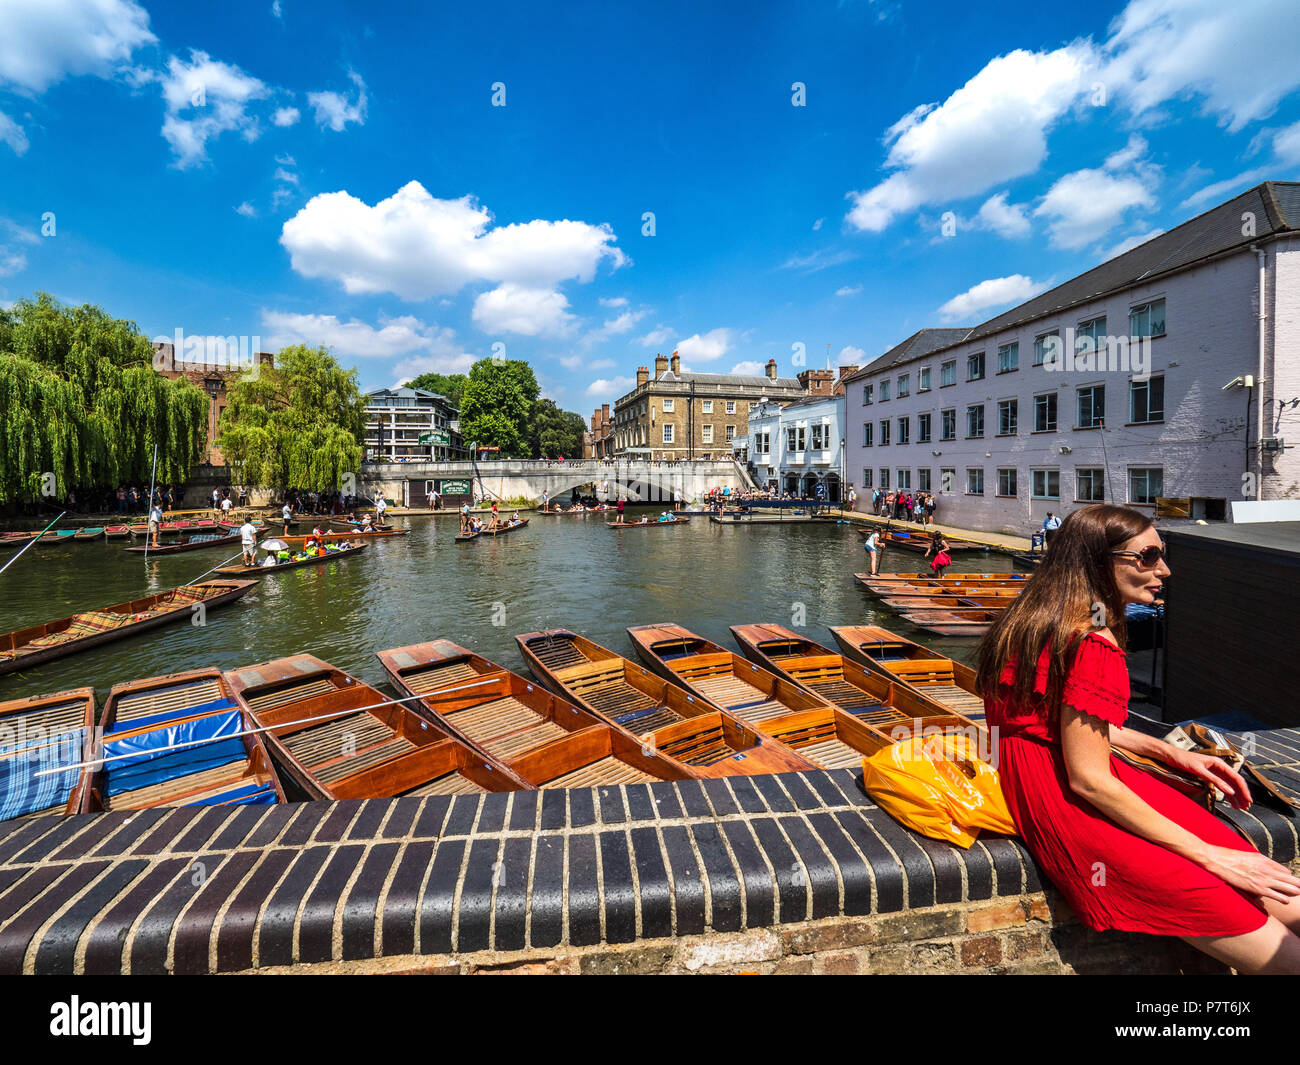 Cambridge Tourism - Punts esperando alquiler en un cálido día de verano. Verano en Cambridge. Foto de stock